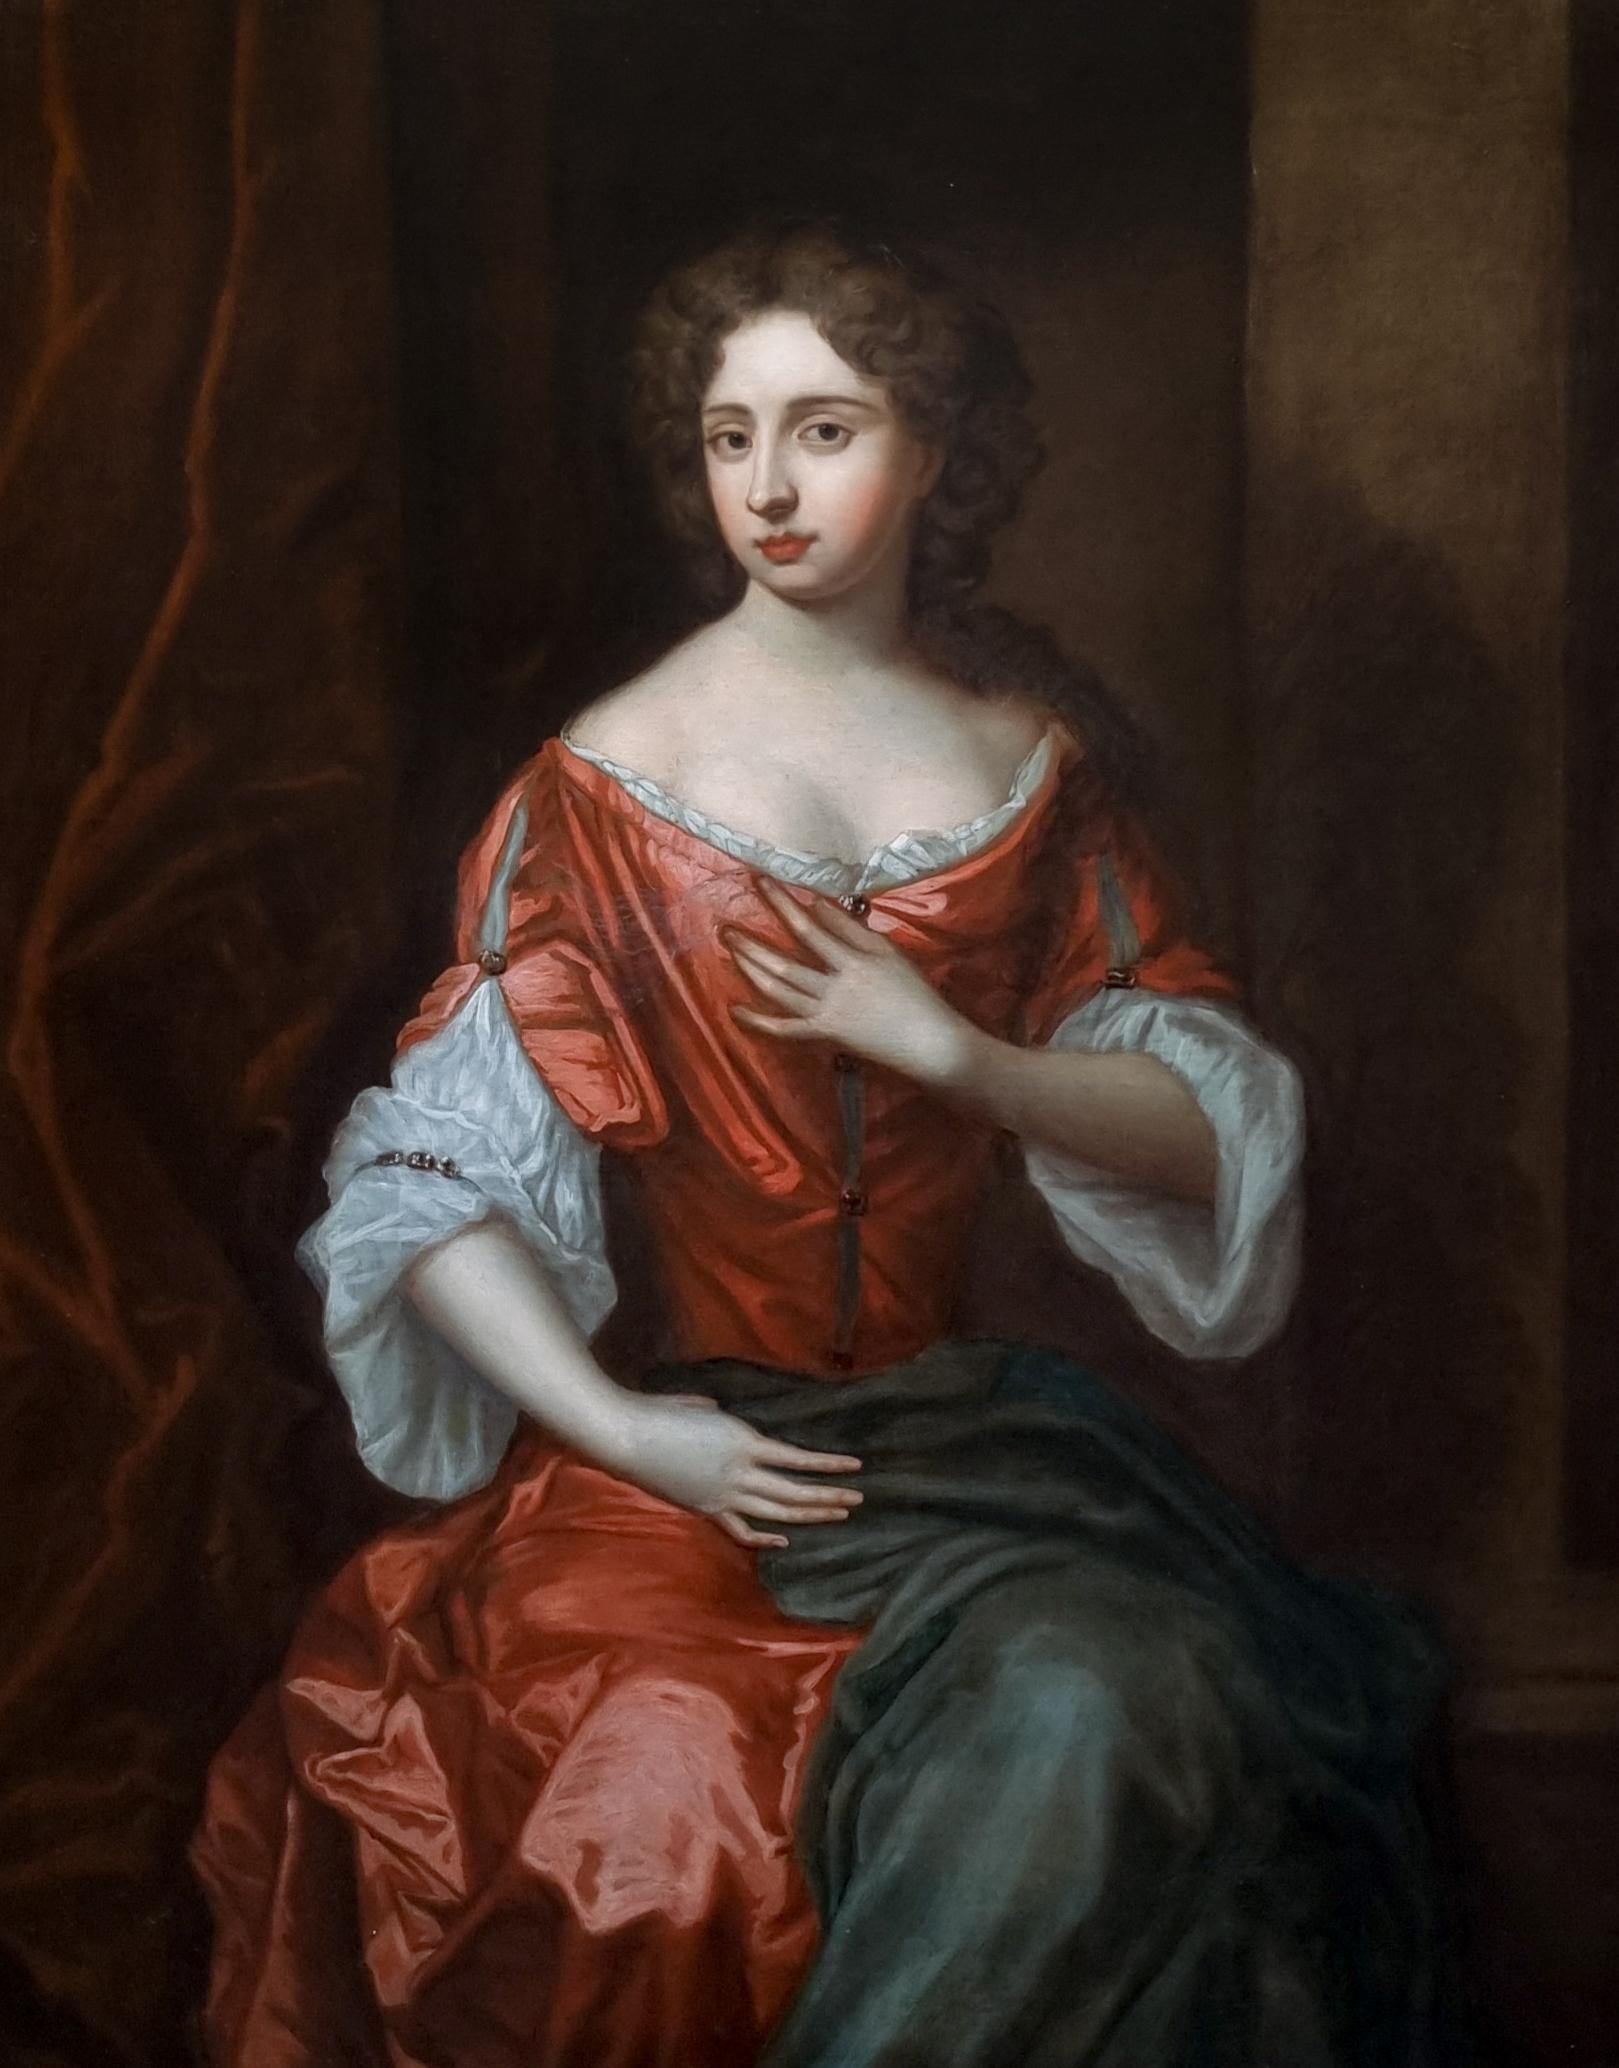 Porträt einer Dame in rotem Kleid auf Porzellan, um 1680, englische Aristokratische Provenienz (Alte Meister), Painting, von William Wissing